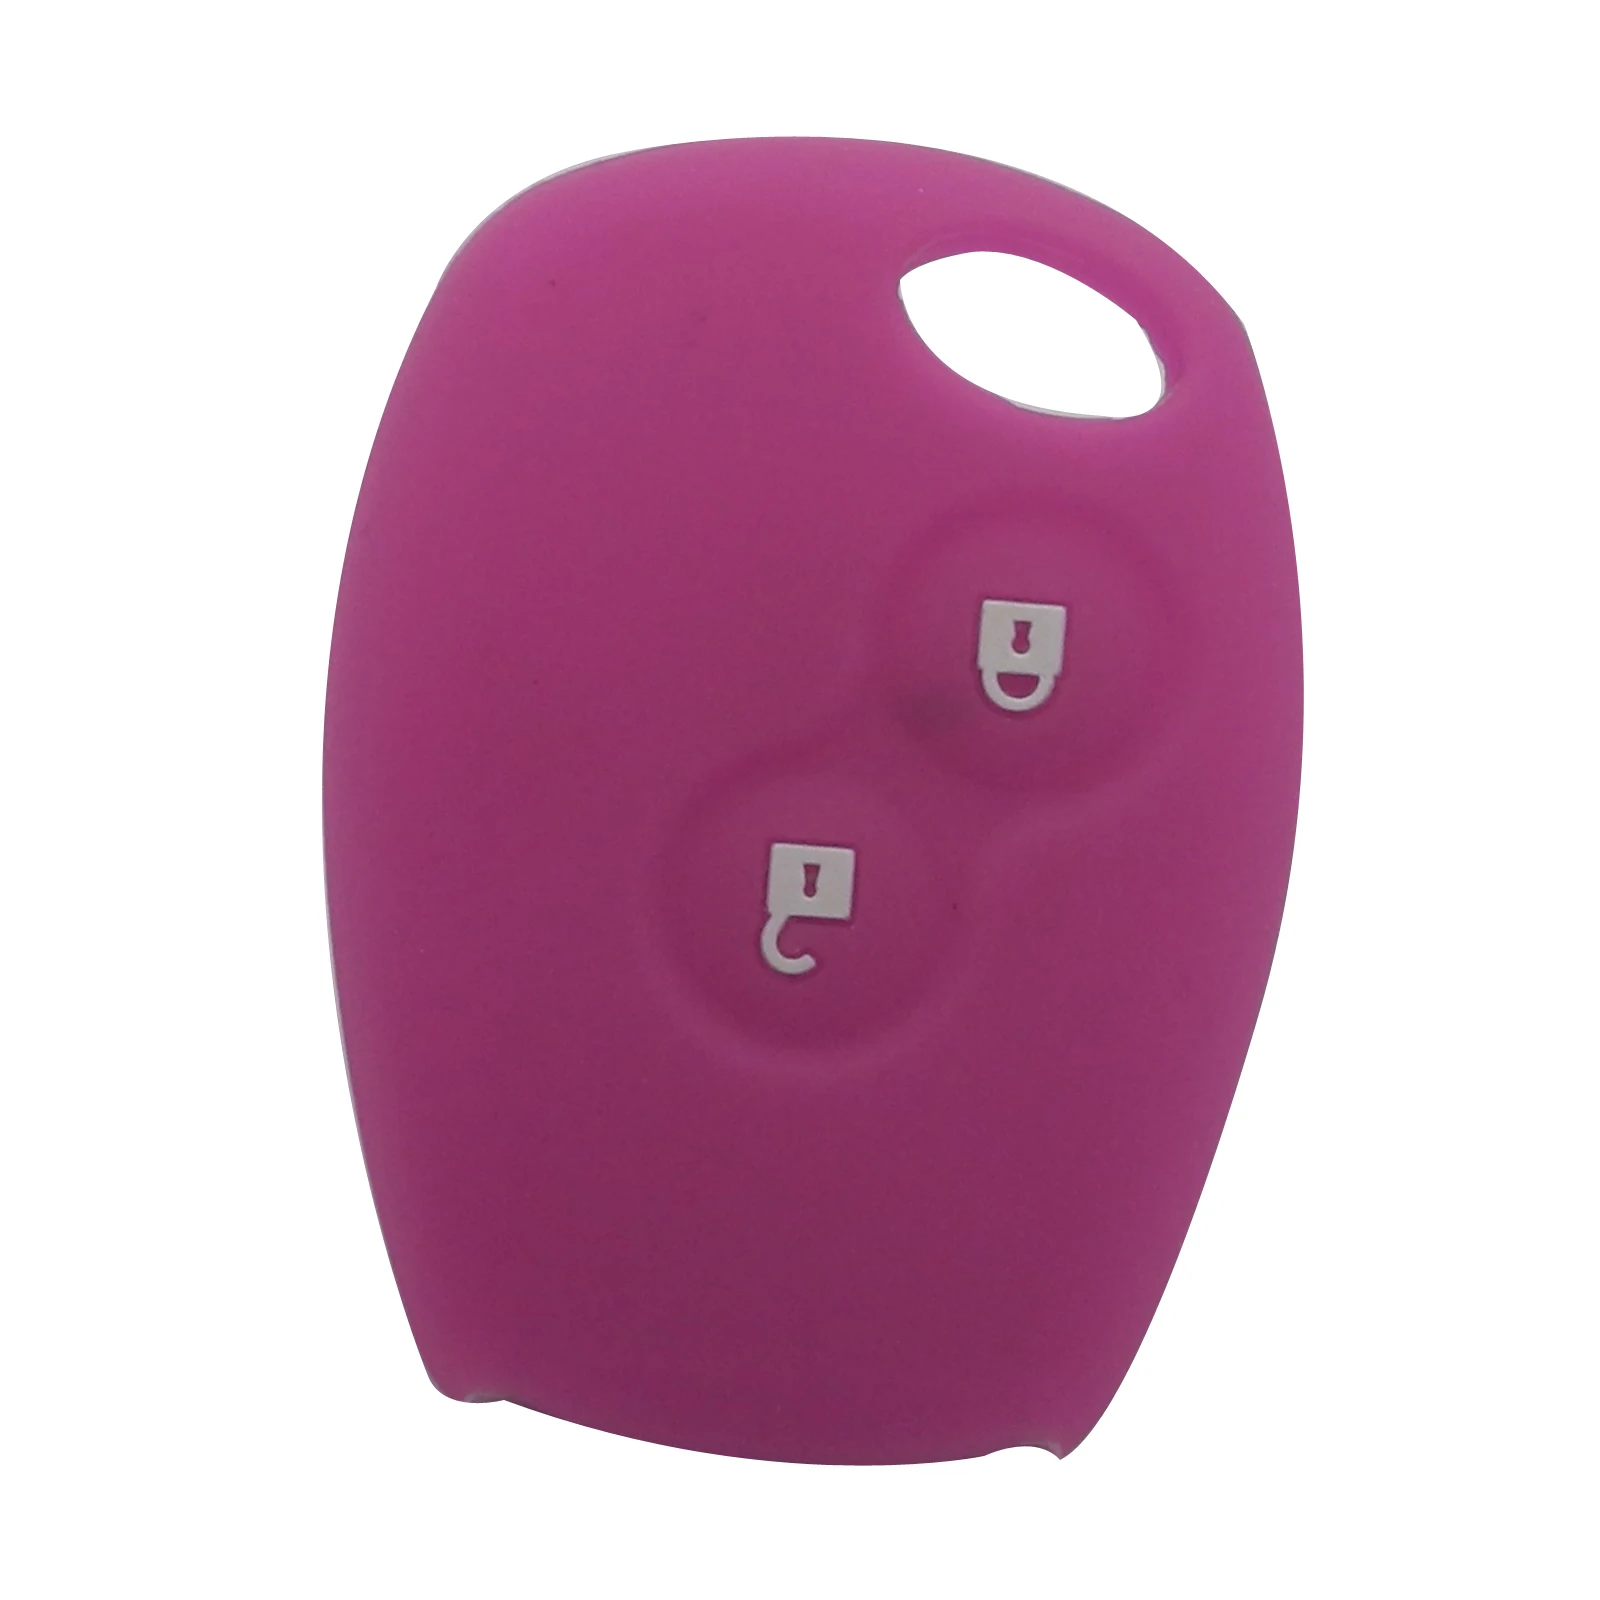 Jingyuqin пульт дистанционного управления 2 кнопки силиконовый резиновый чехол для ключей автомобиля для Renault Kangoo DACIA Scenic Megane Sandero Captur Twingo Modu - Название цвета: purple